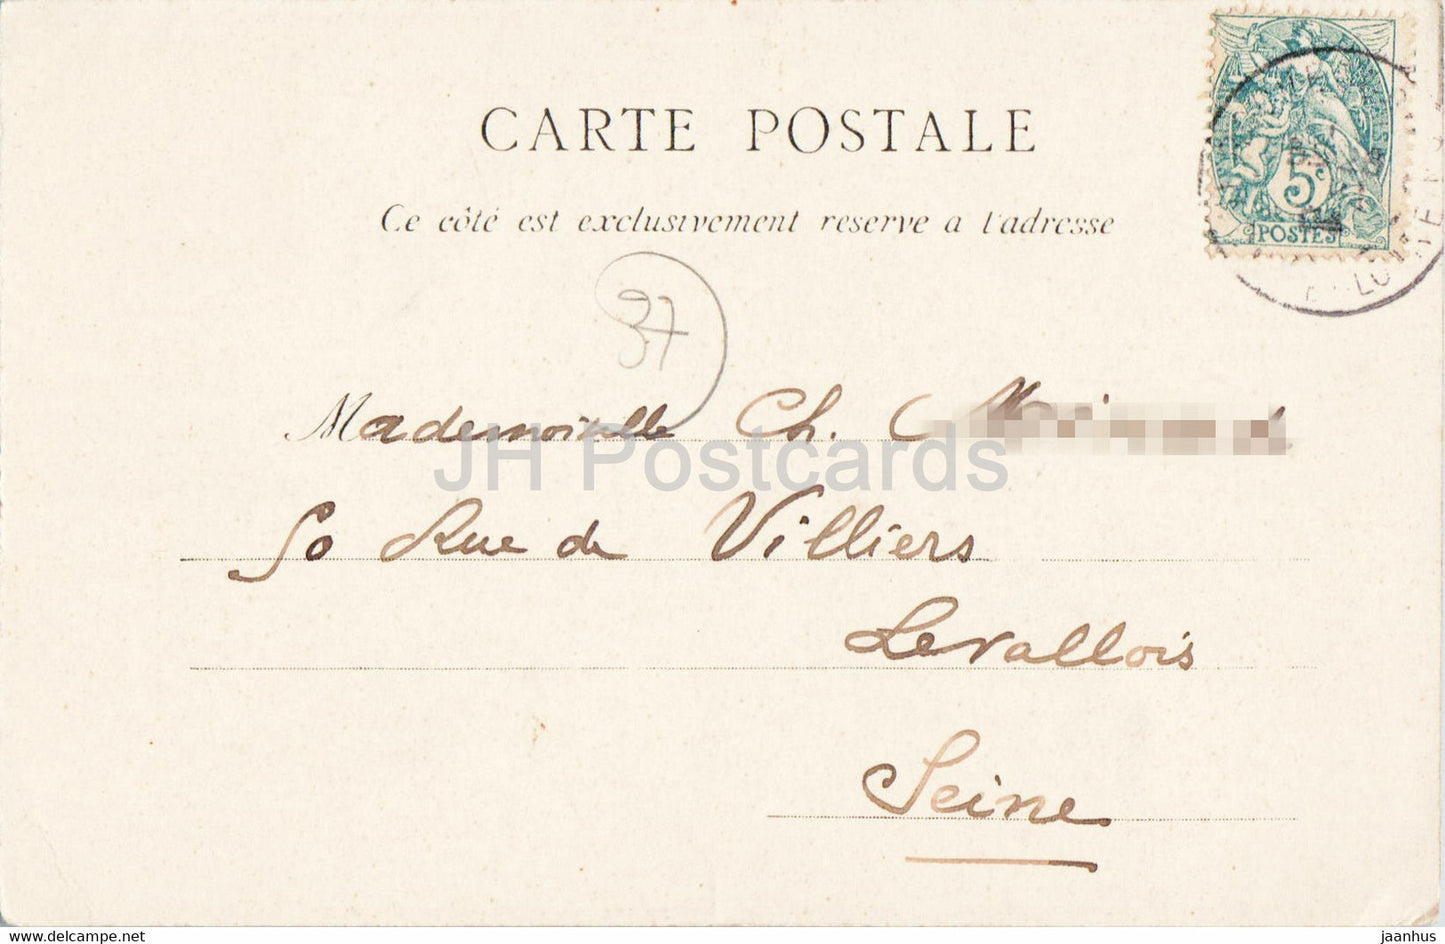 Tours - La Psalette - 19 - old postcard - 1904 - France - used